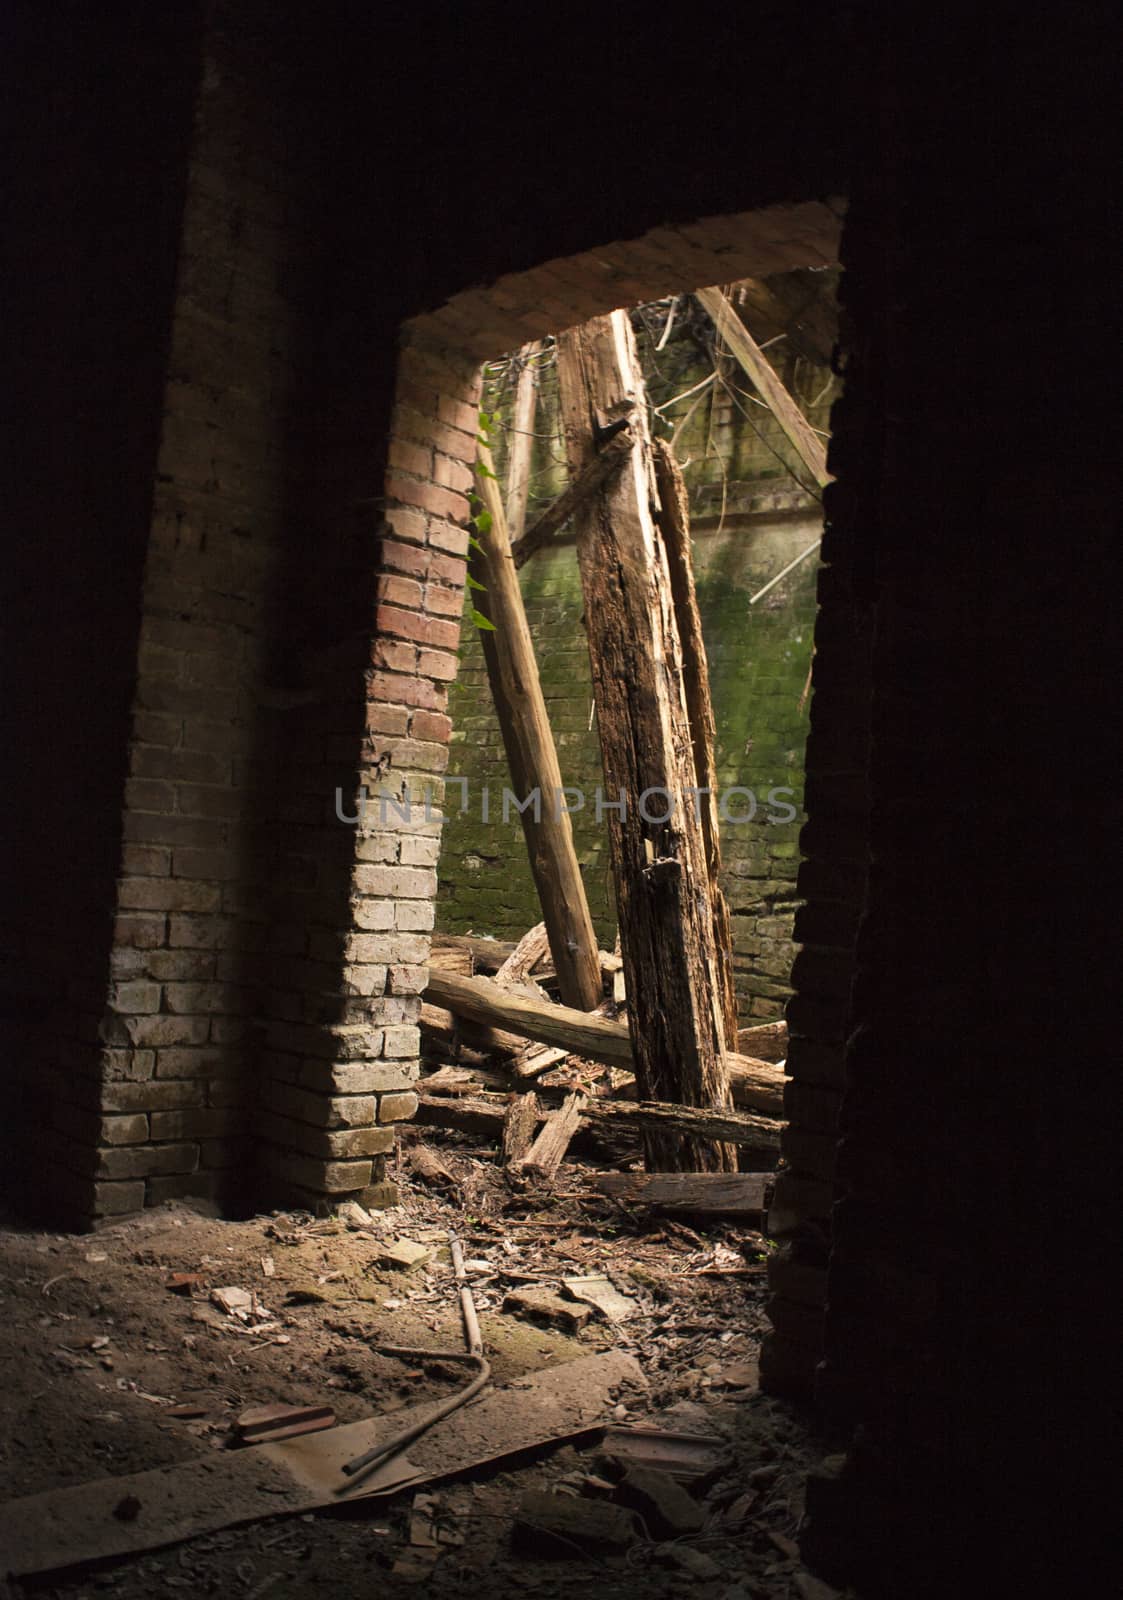 Abandoned sugar factory in Villanova Marchesana, Italy #3 by pippocarlot